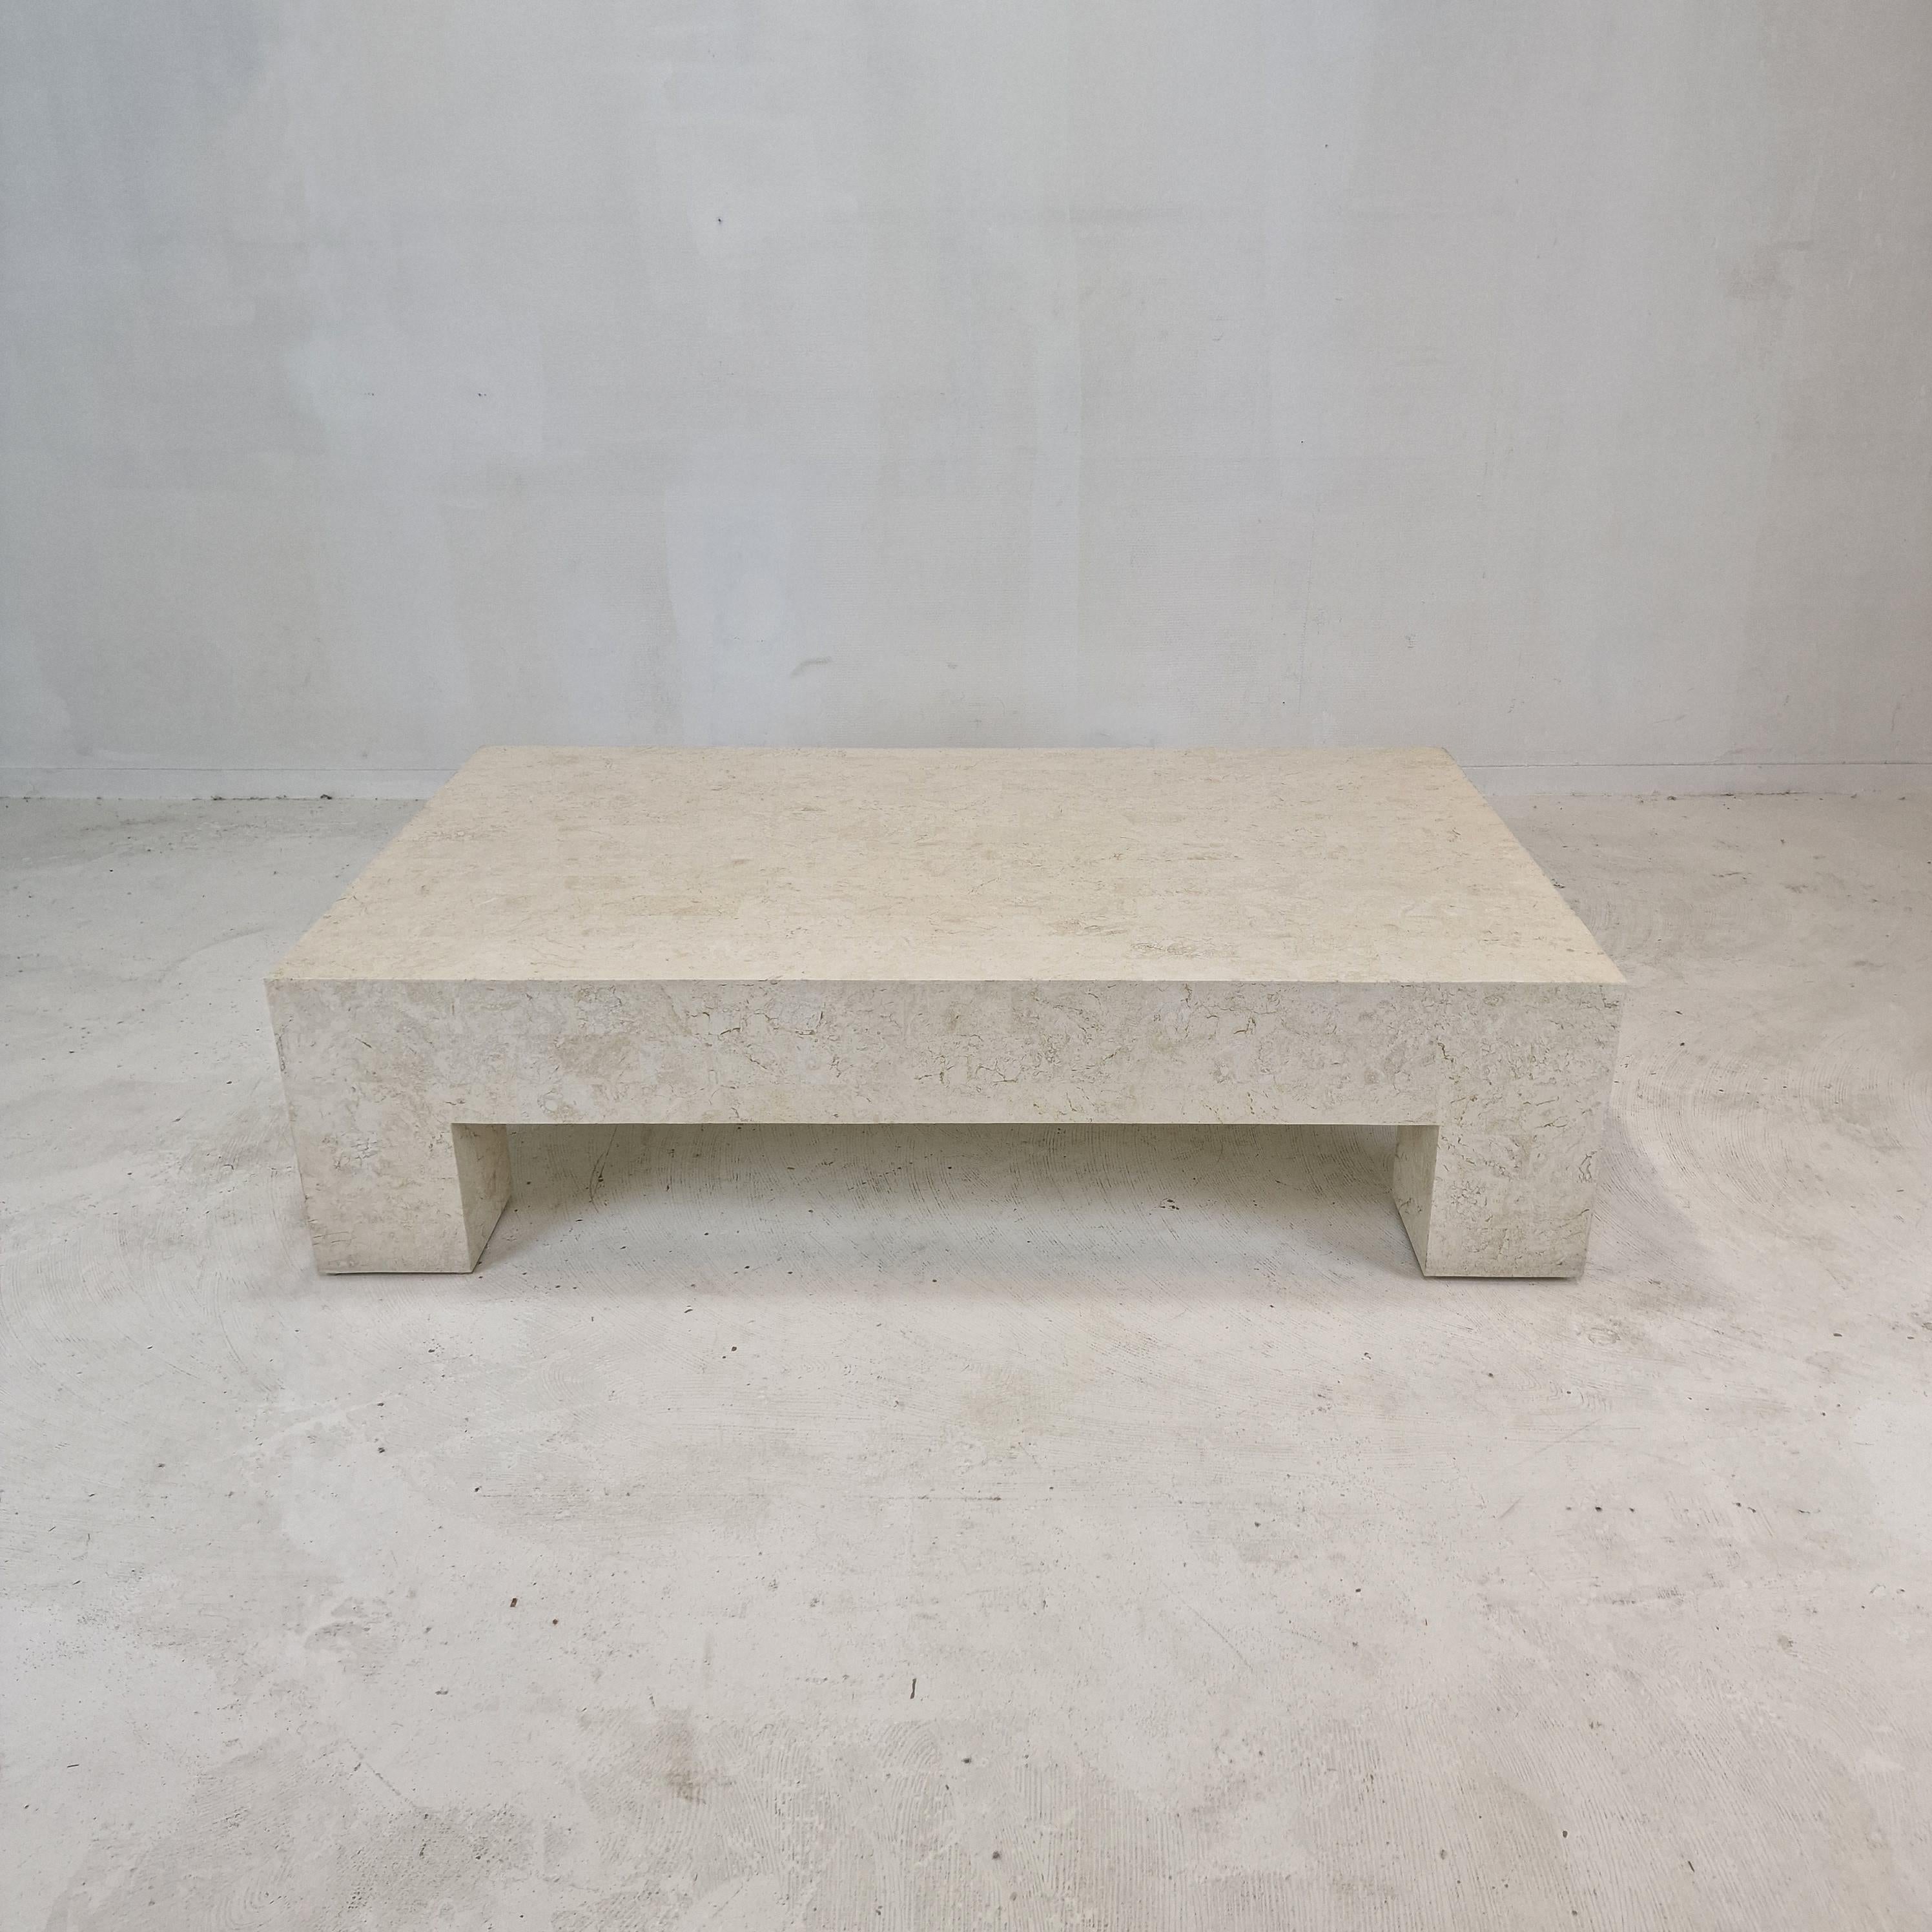 Rare et très belle table basse de Magnussen Ponte, années 1980.

Cette table étonnante est fabriquée en pierre de Mactan, également appelée pierre fossile.

La pierre de Mactan se trouve uniquement sur l'île de Mactan, dans le sud des Philippines.